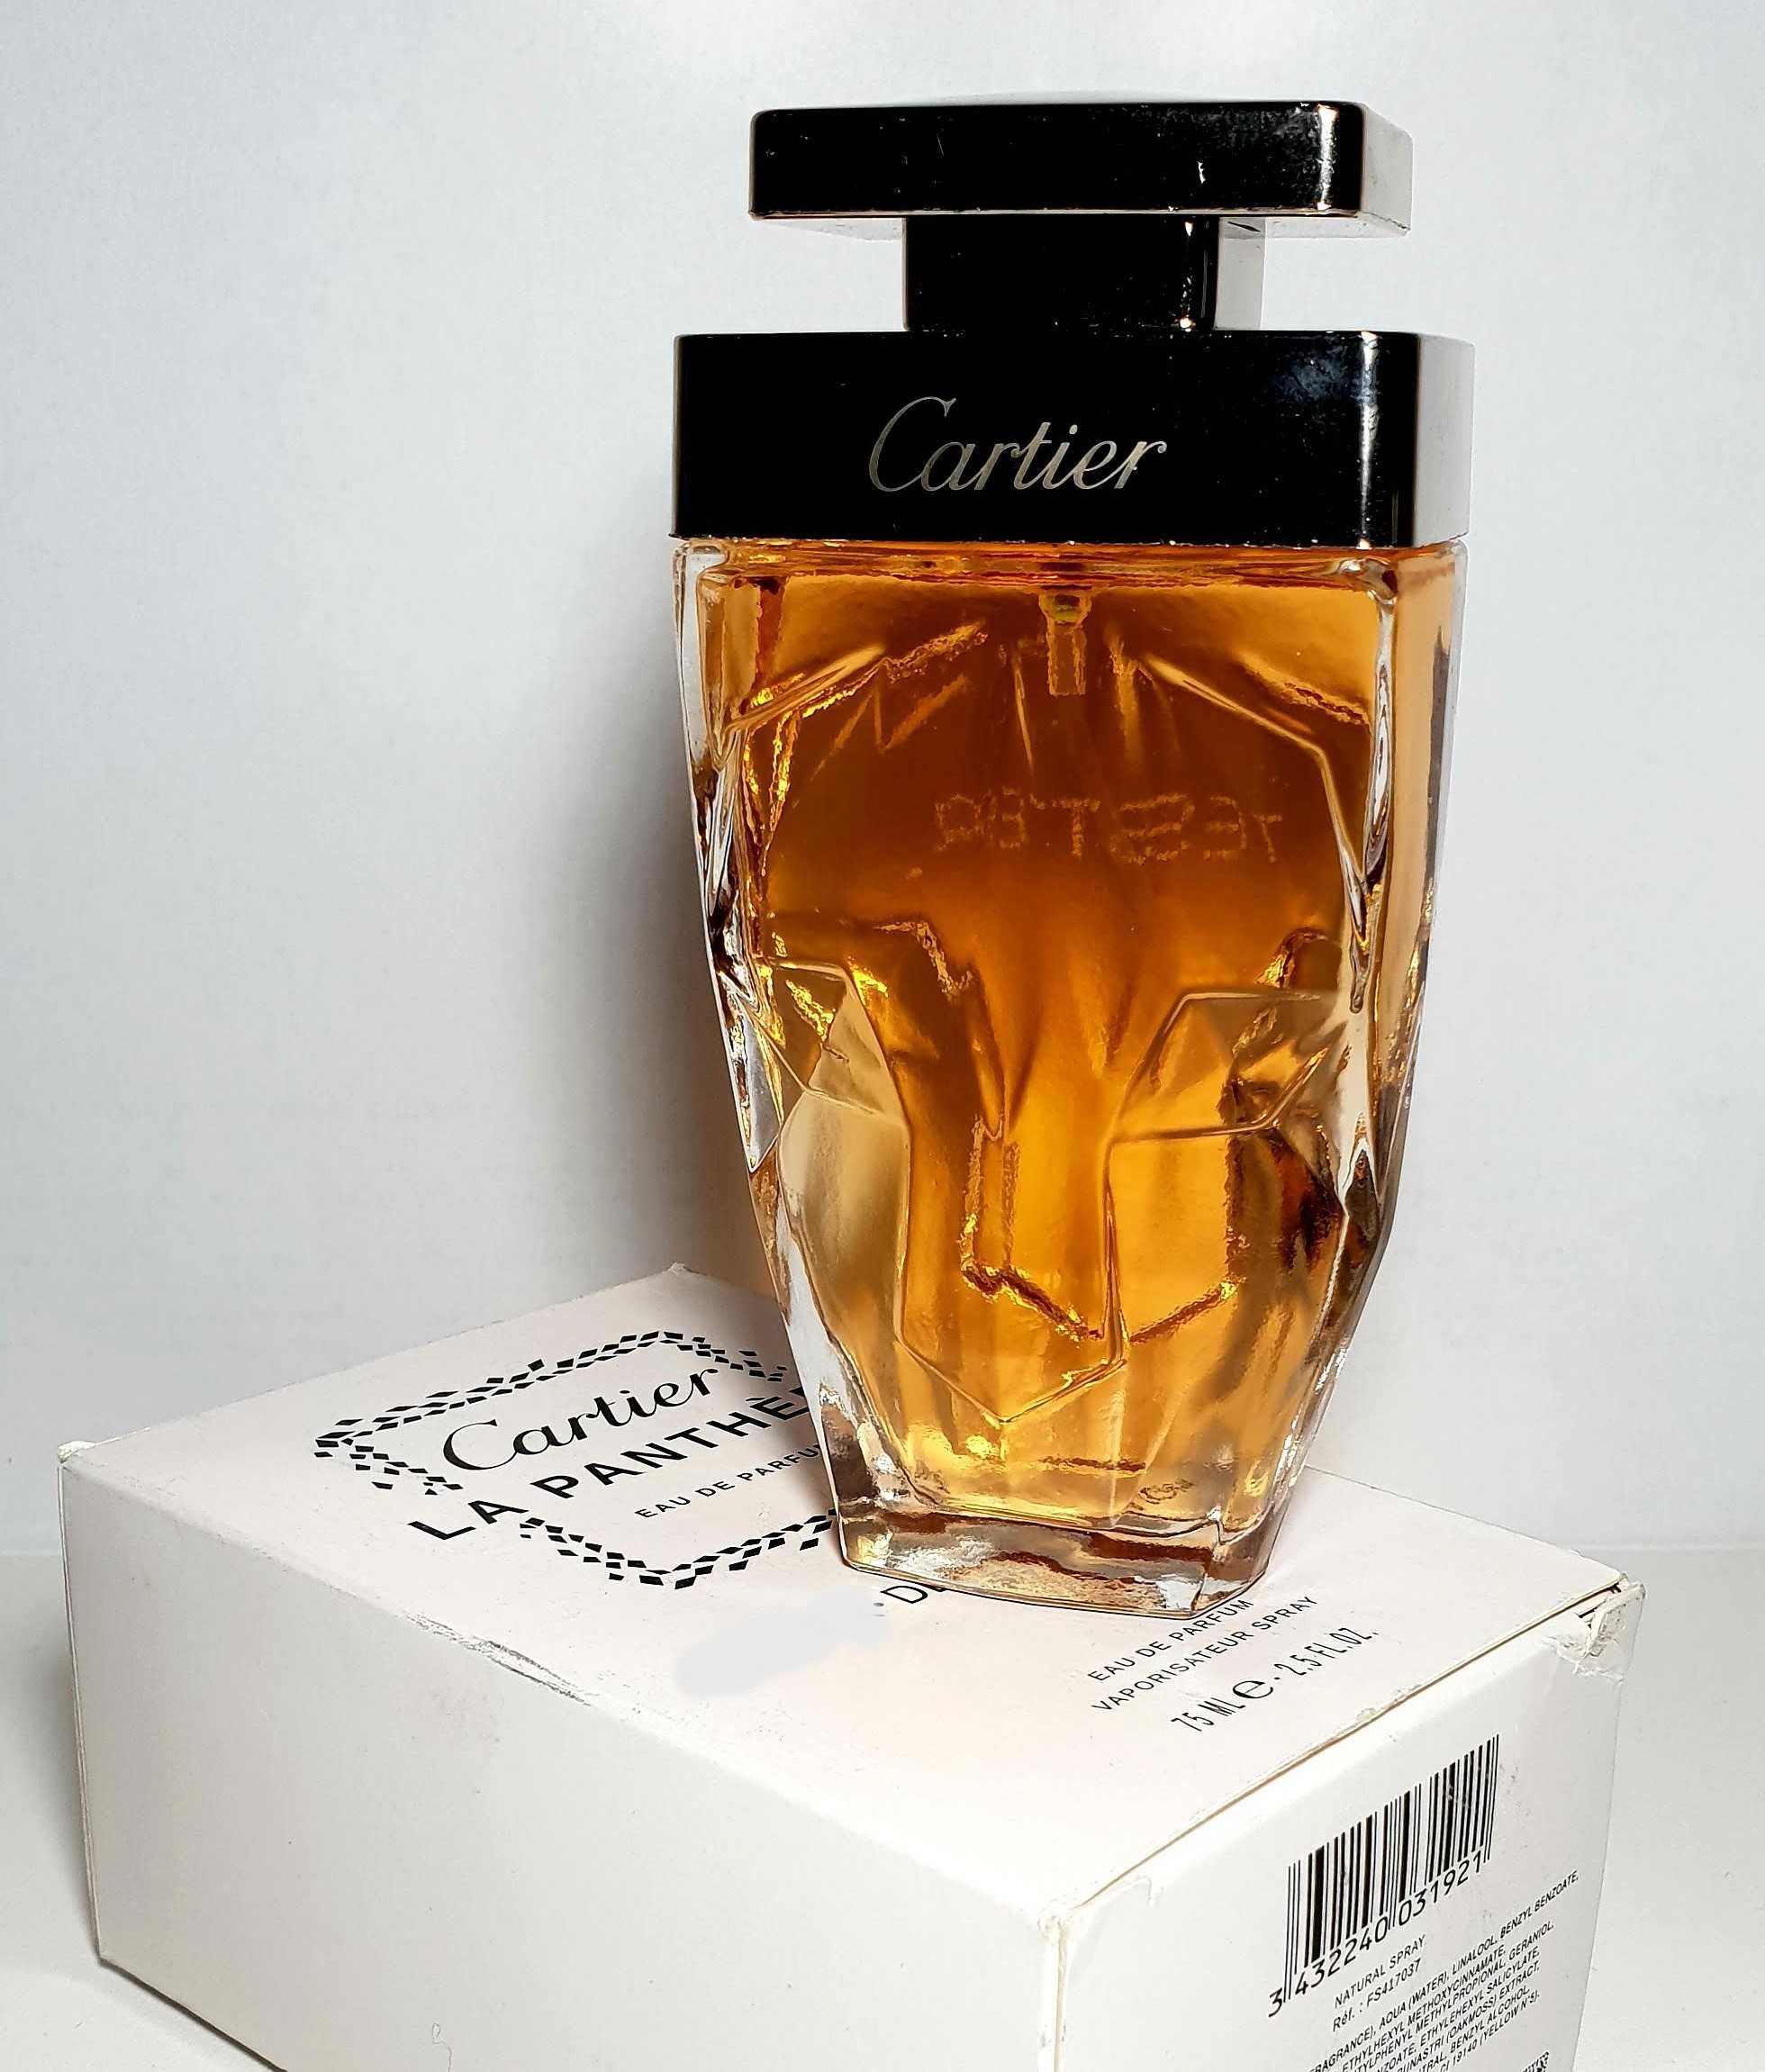 Parfum Cartier - La Panthere, dama, Eau de Parfum, 75ml